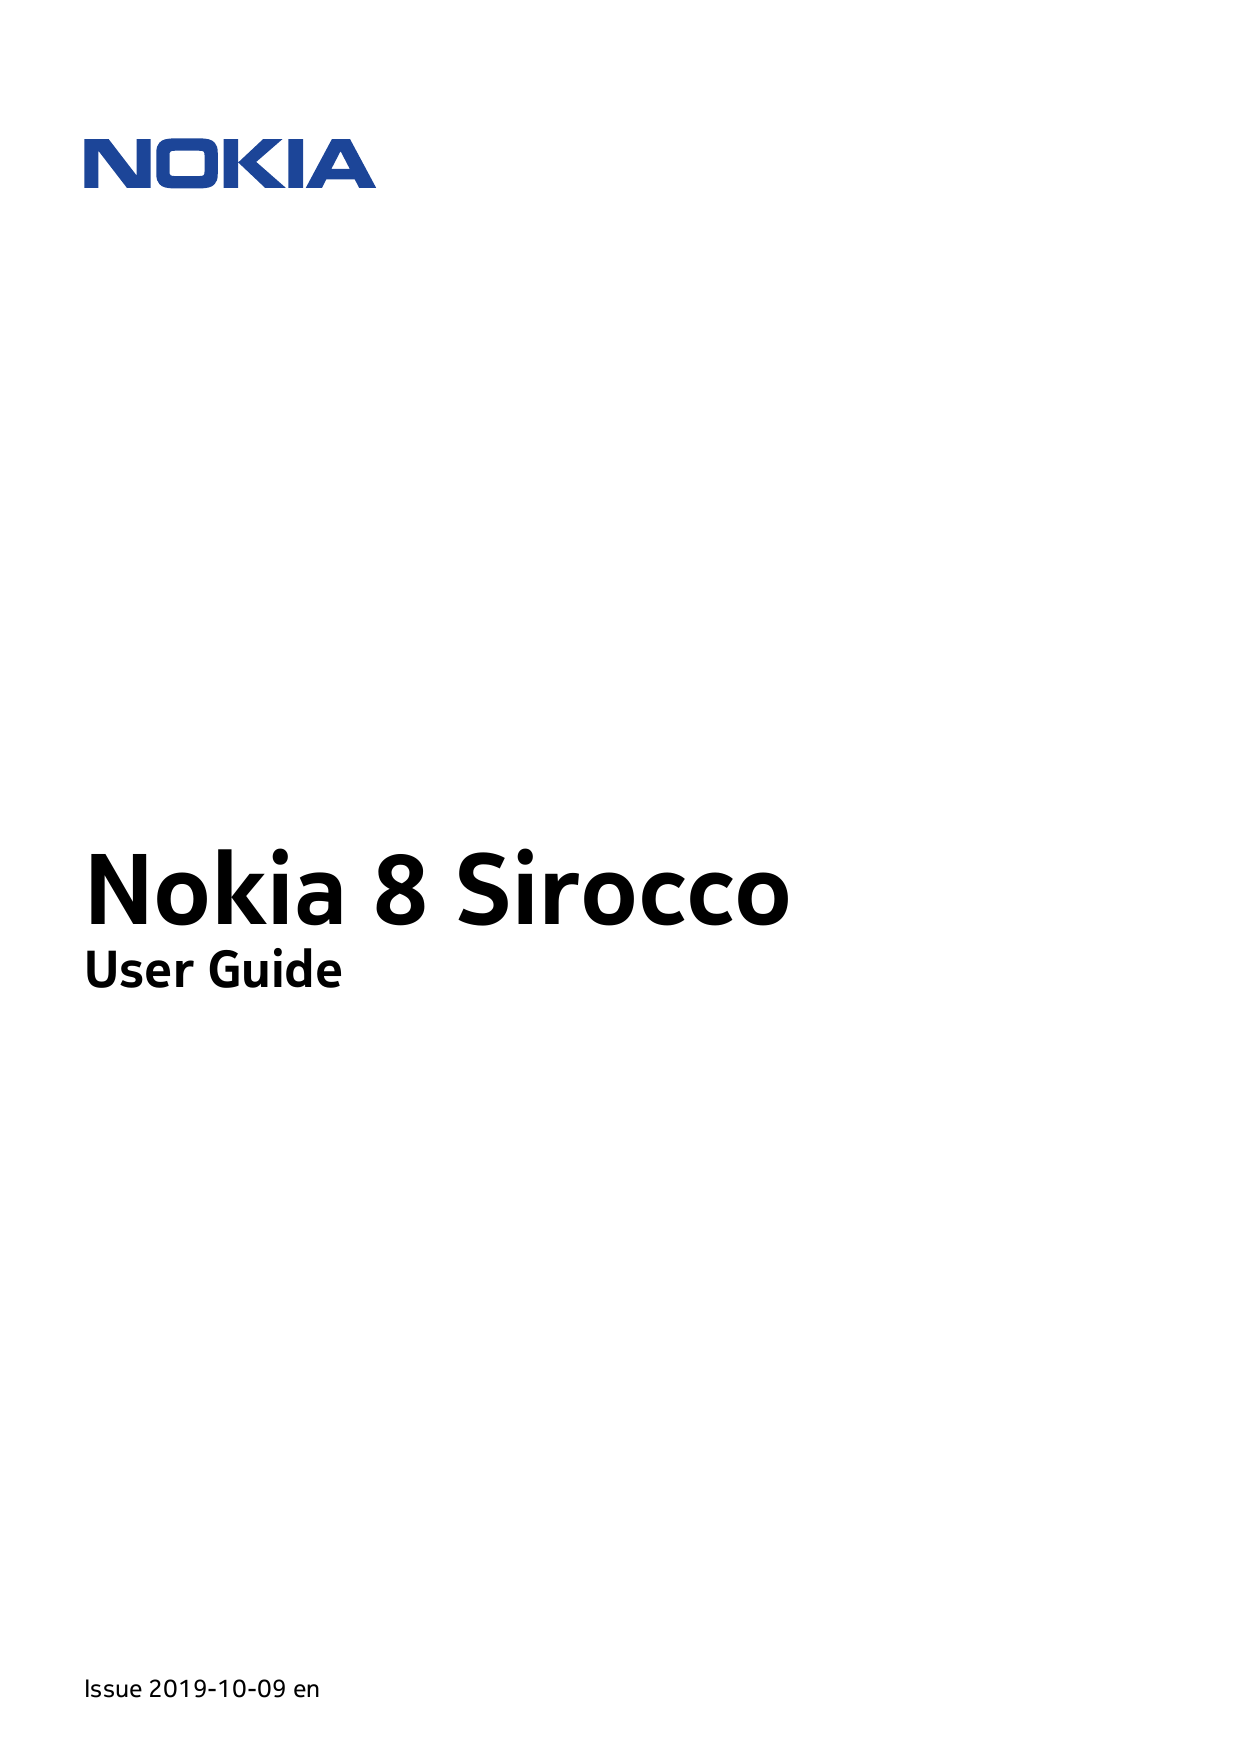 Nokia 8 SiroccoUser GuideIssue 2019-10-09 en